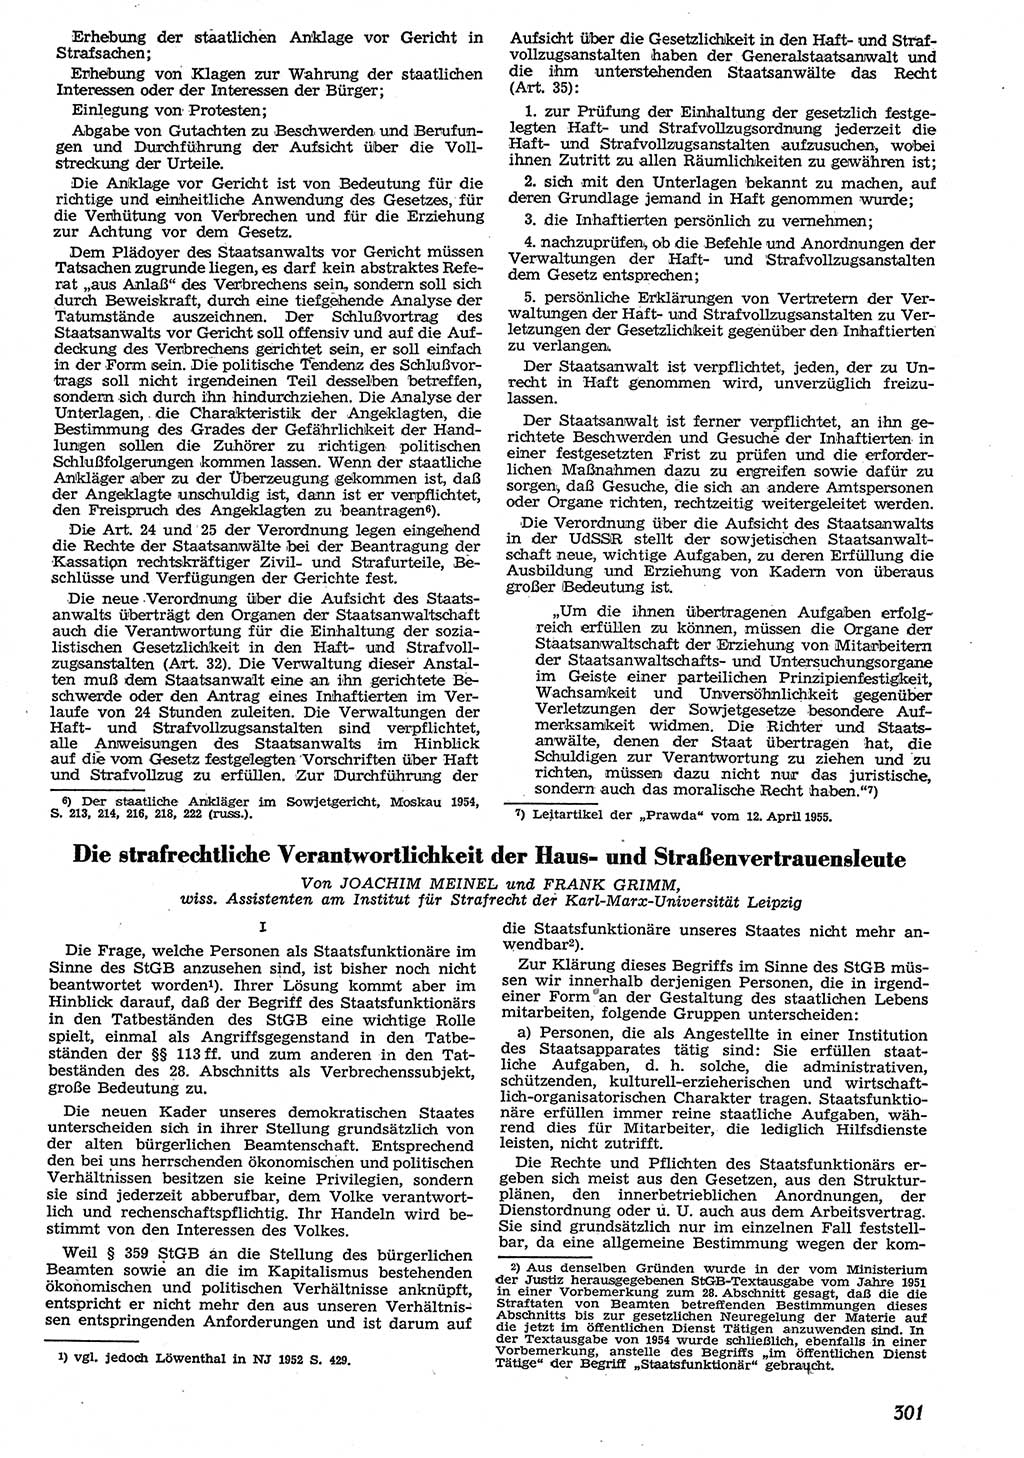 Neue Justiz (NJ), Zeitschrift für Recht und Rechtswissenschaft [Deutsche Demokratische Republik (DDR)], 10. Jahrgang 1956, Seite 301 (NJ DDR 1956, S. 301)